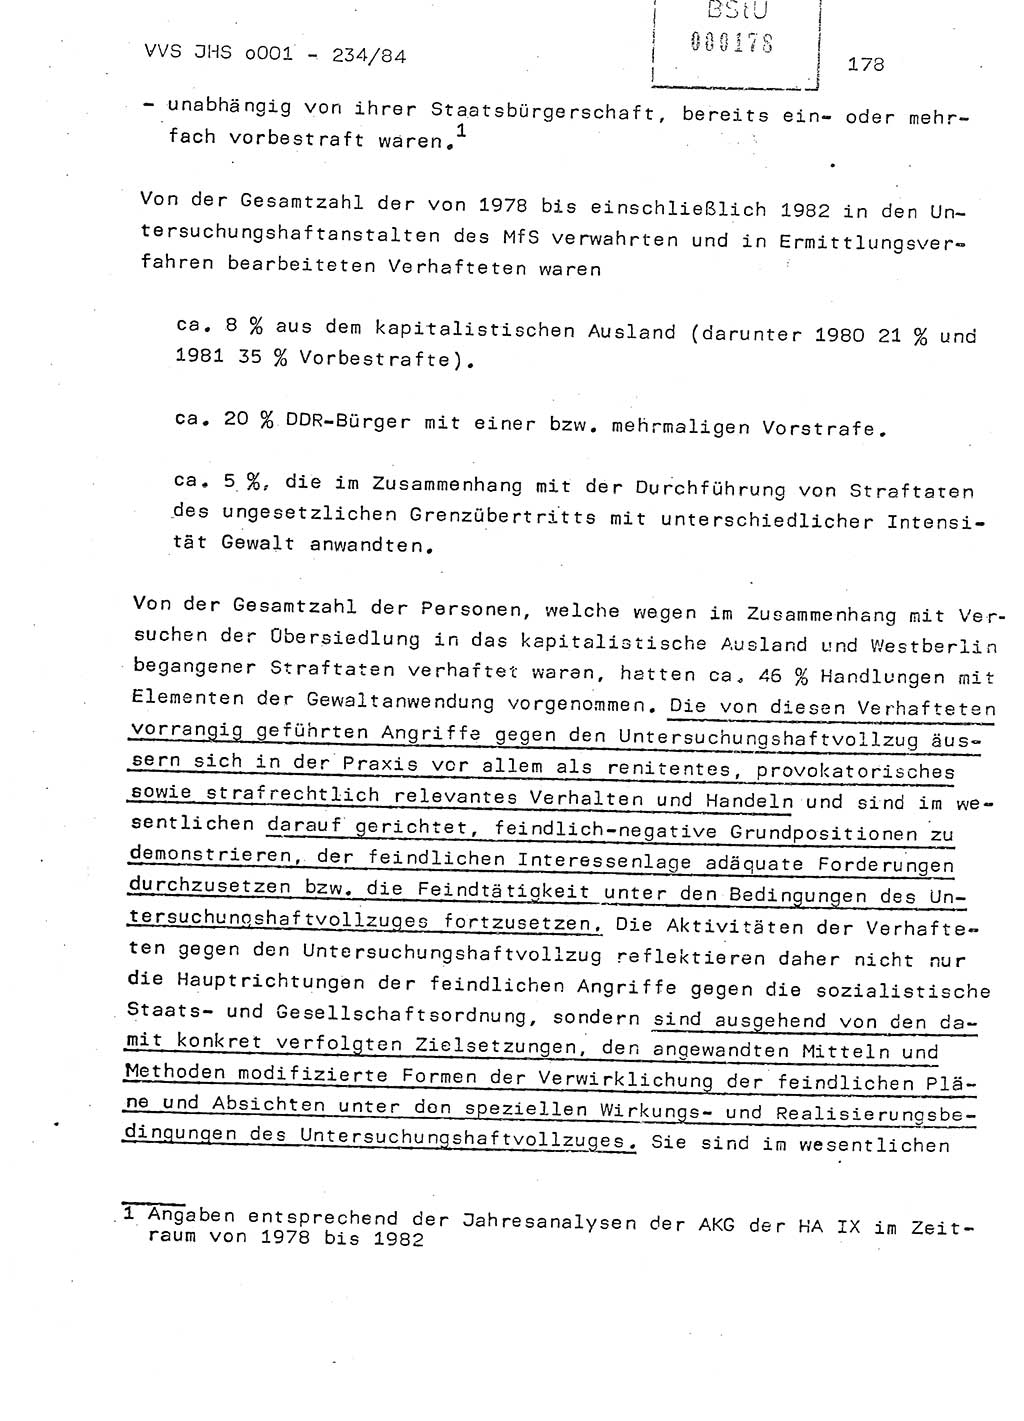 Dissertation Oberst Siegfried Rataizick (Abt. ⅩⅣ), Oberstleutnant Volkmar Heinz (Abt. ⅩⅣ), Oberstleutnant Werner Stein (HA Ⅸ), Hauptmann Heinz Conrad (JHS), Ministerium für Staatssicherheit (MfS) [Deutsche Demokratische Republik (DDR)], Juristische Hochschule (JHS), Vertrauliche Verschlußsache (VVS) o001-234/84, Potsdam 1984, Seite 178 (Diss. MfS DDR JHS VVS o001-234/84 1984, S. 178)